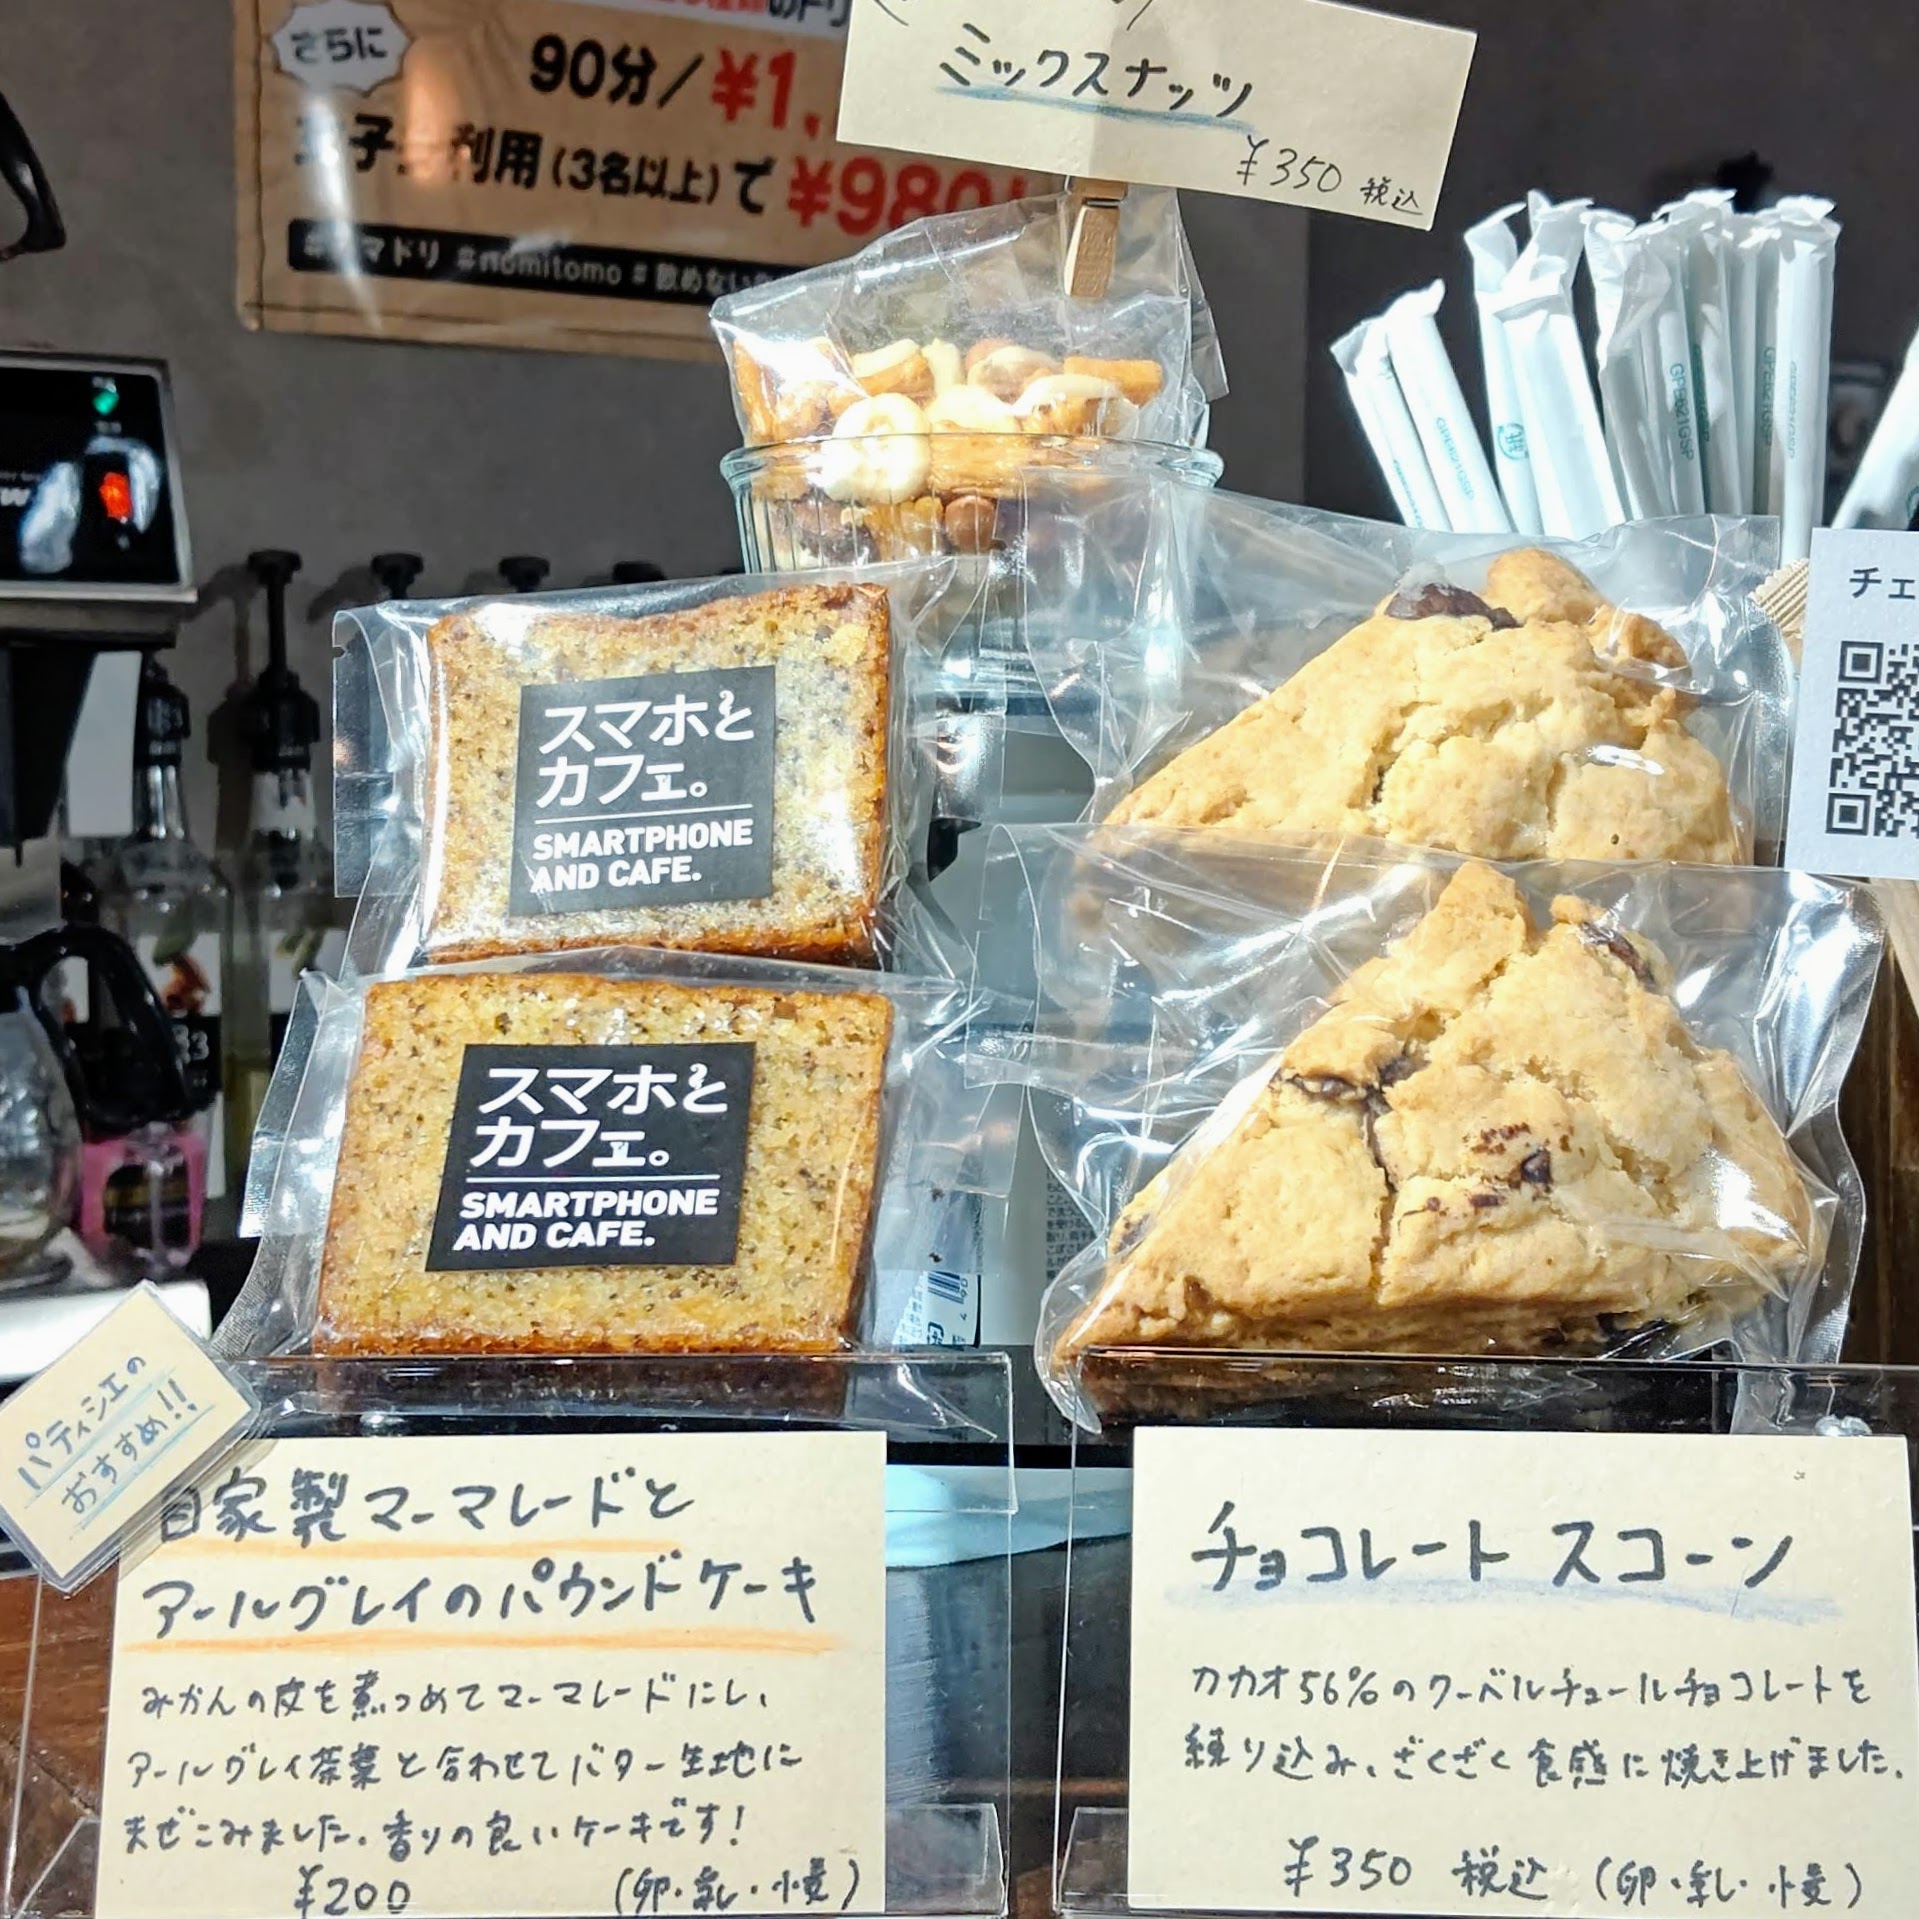 埼玉県越谷市 スマホとカフェ。 テイクアウト お持ち帰り 焼き菓子